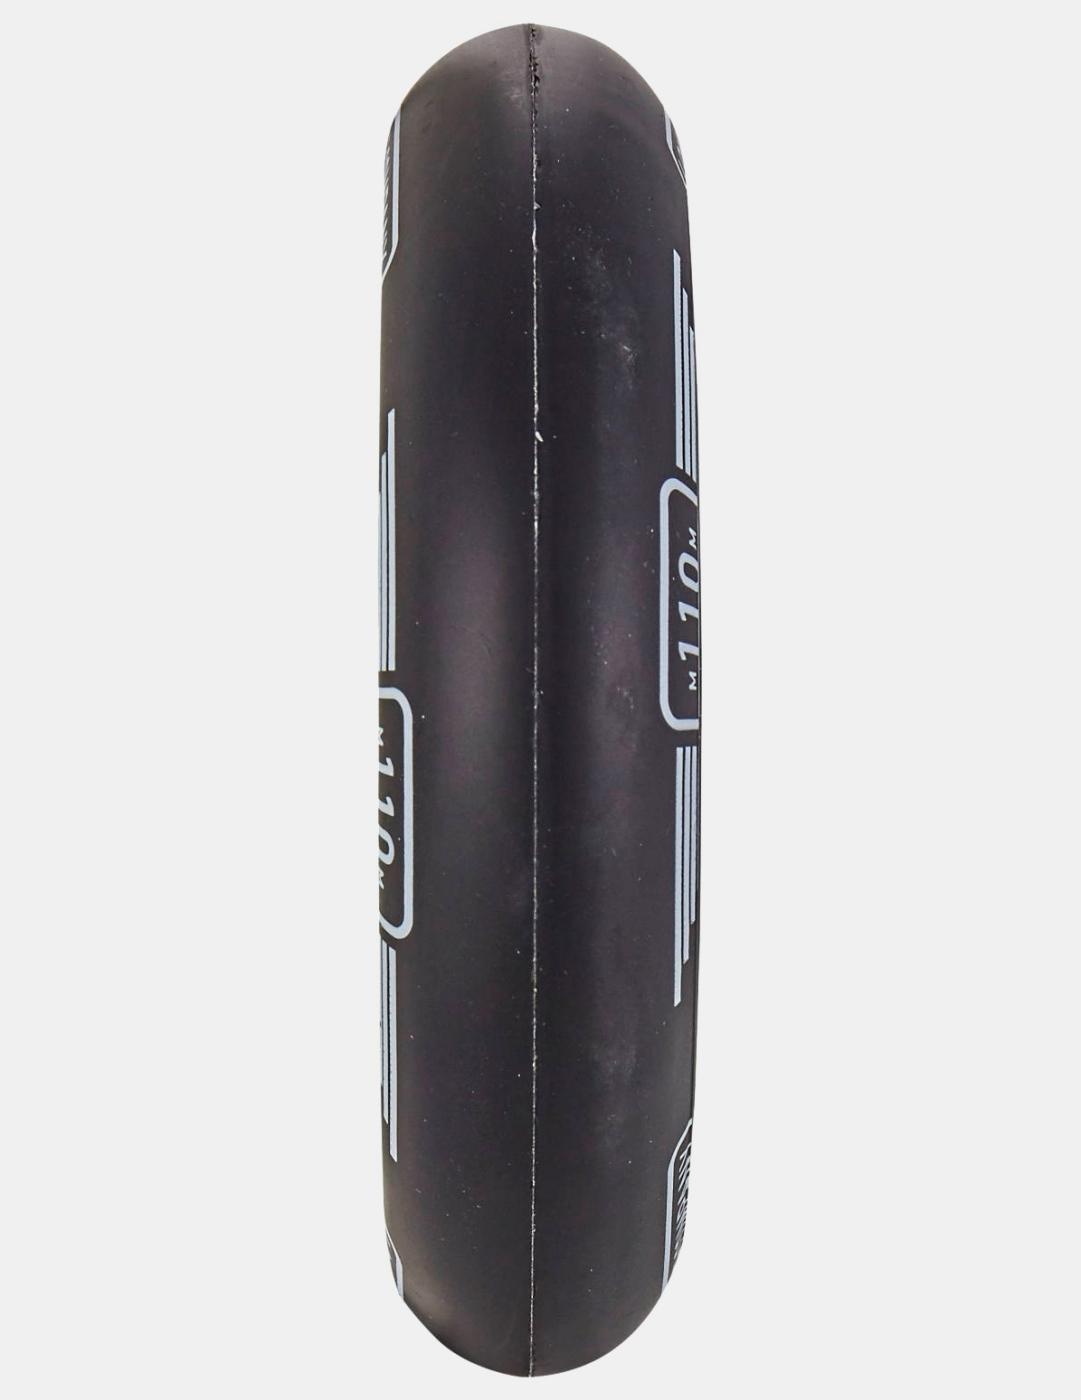 Rueda Scooter LONGWAY PRECINCT 110mm - Negro